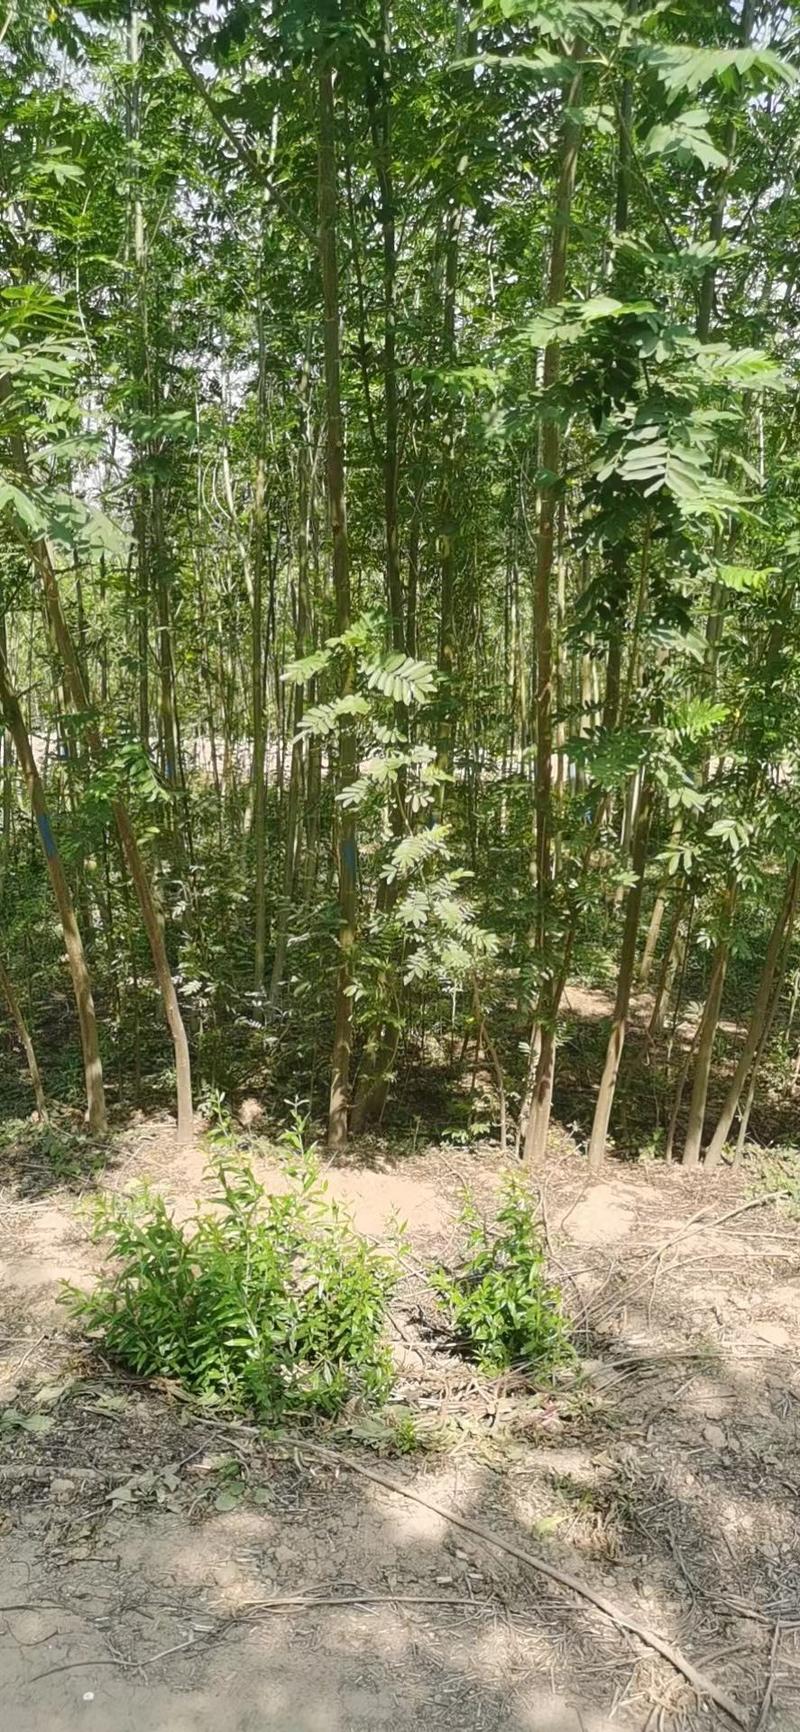 【热销】枫杨柳，元宝树，2公分--30公分，基地种植批发